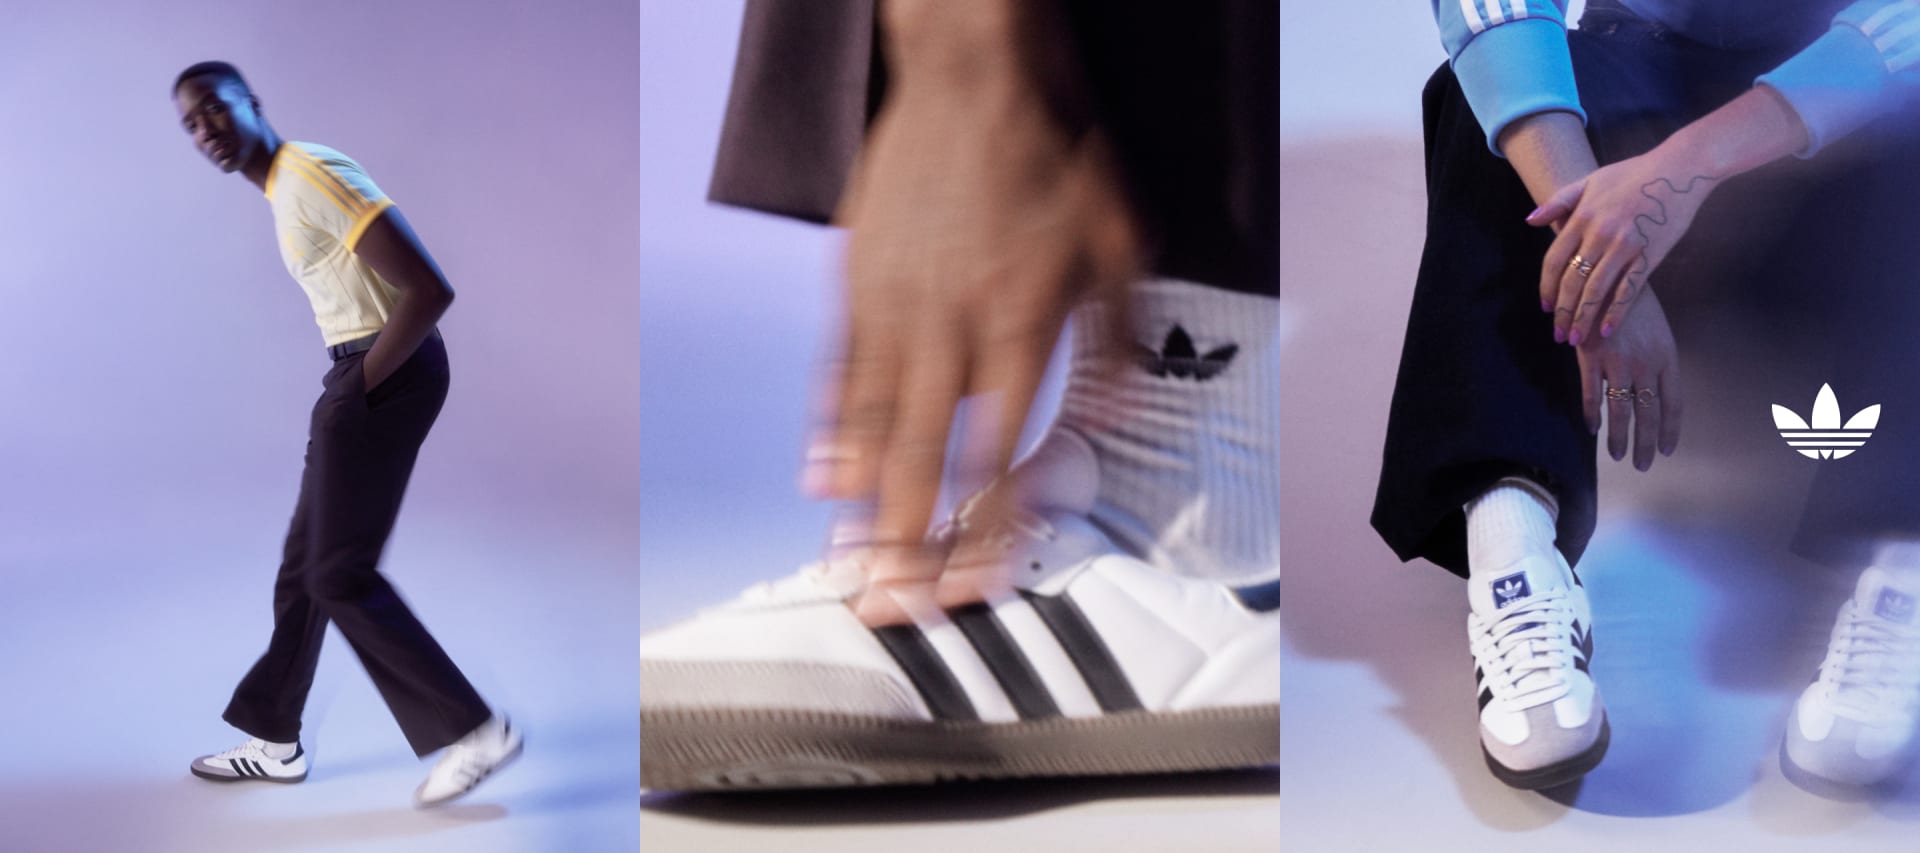 adidas Originals Schuhe acheter pas cher en promotion l DEFSHOP